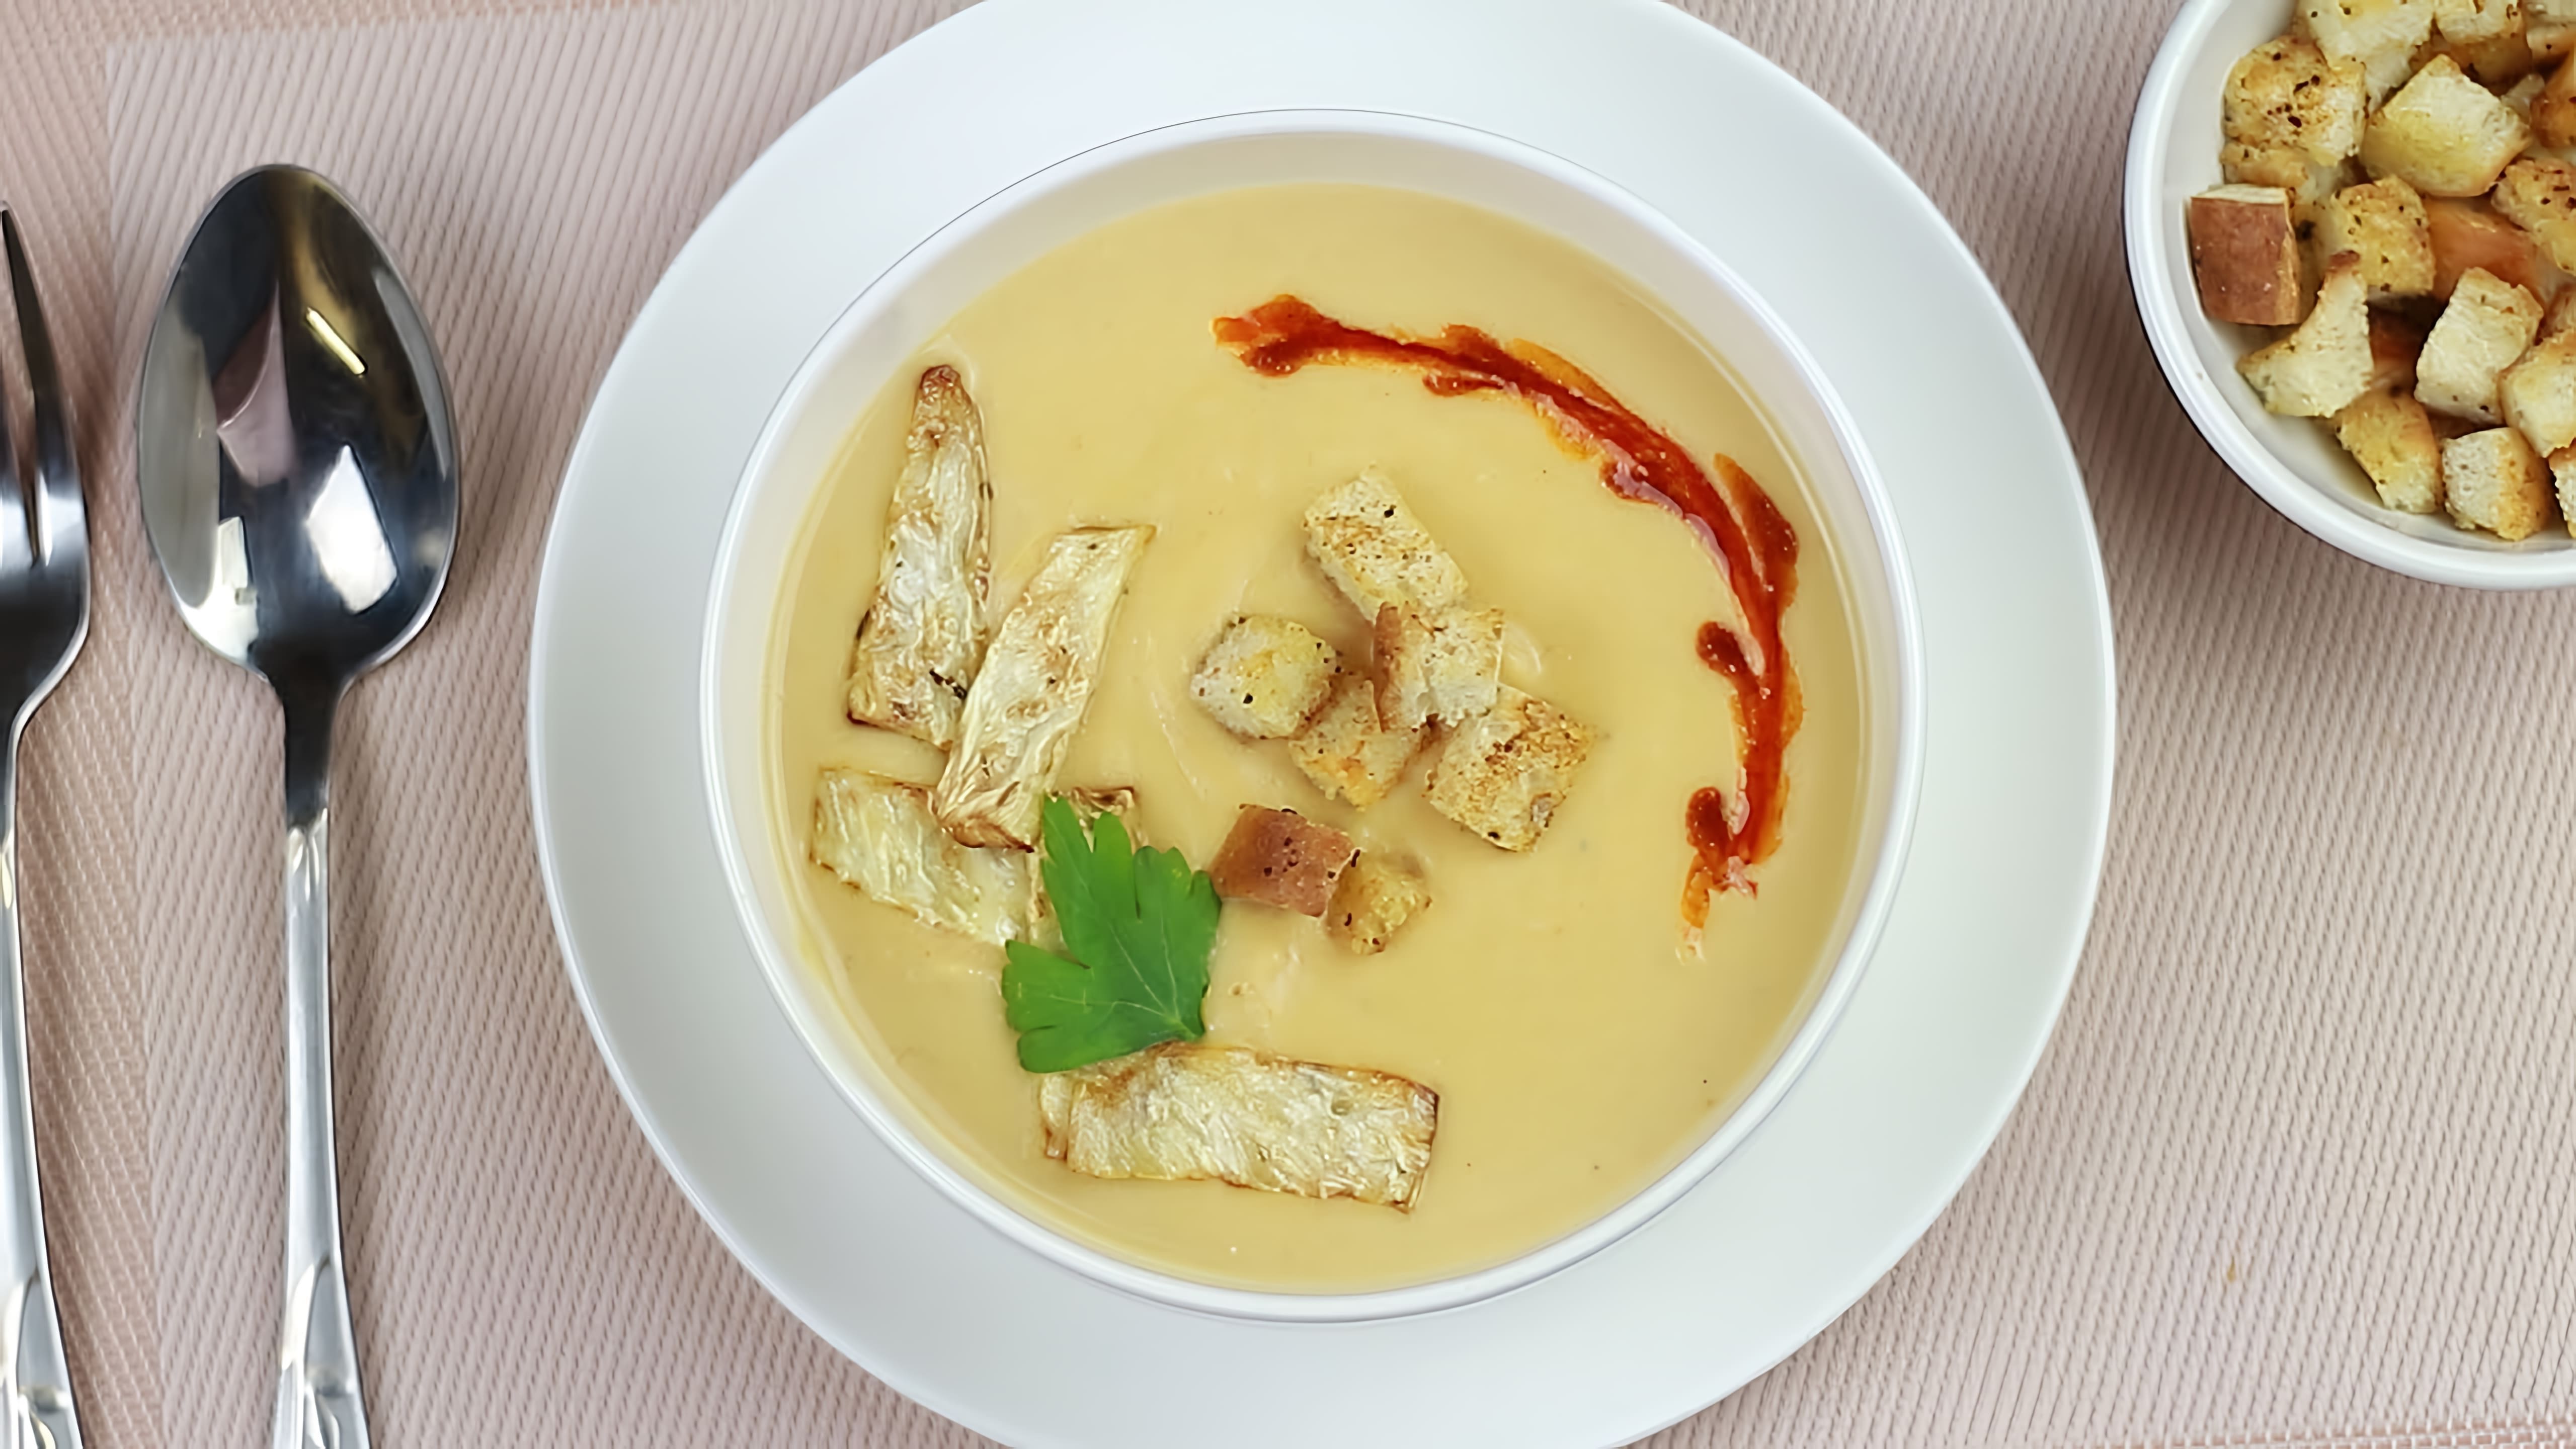 В этом видео демонстрируется рецепт сливочного супа-пюре из сельдерея